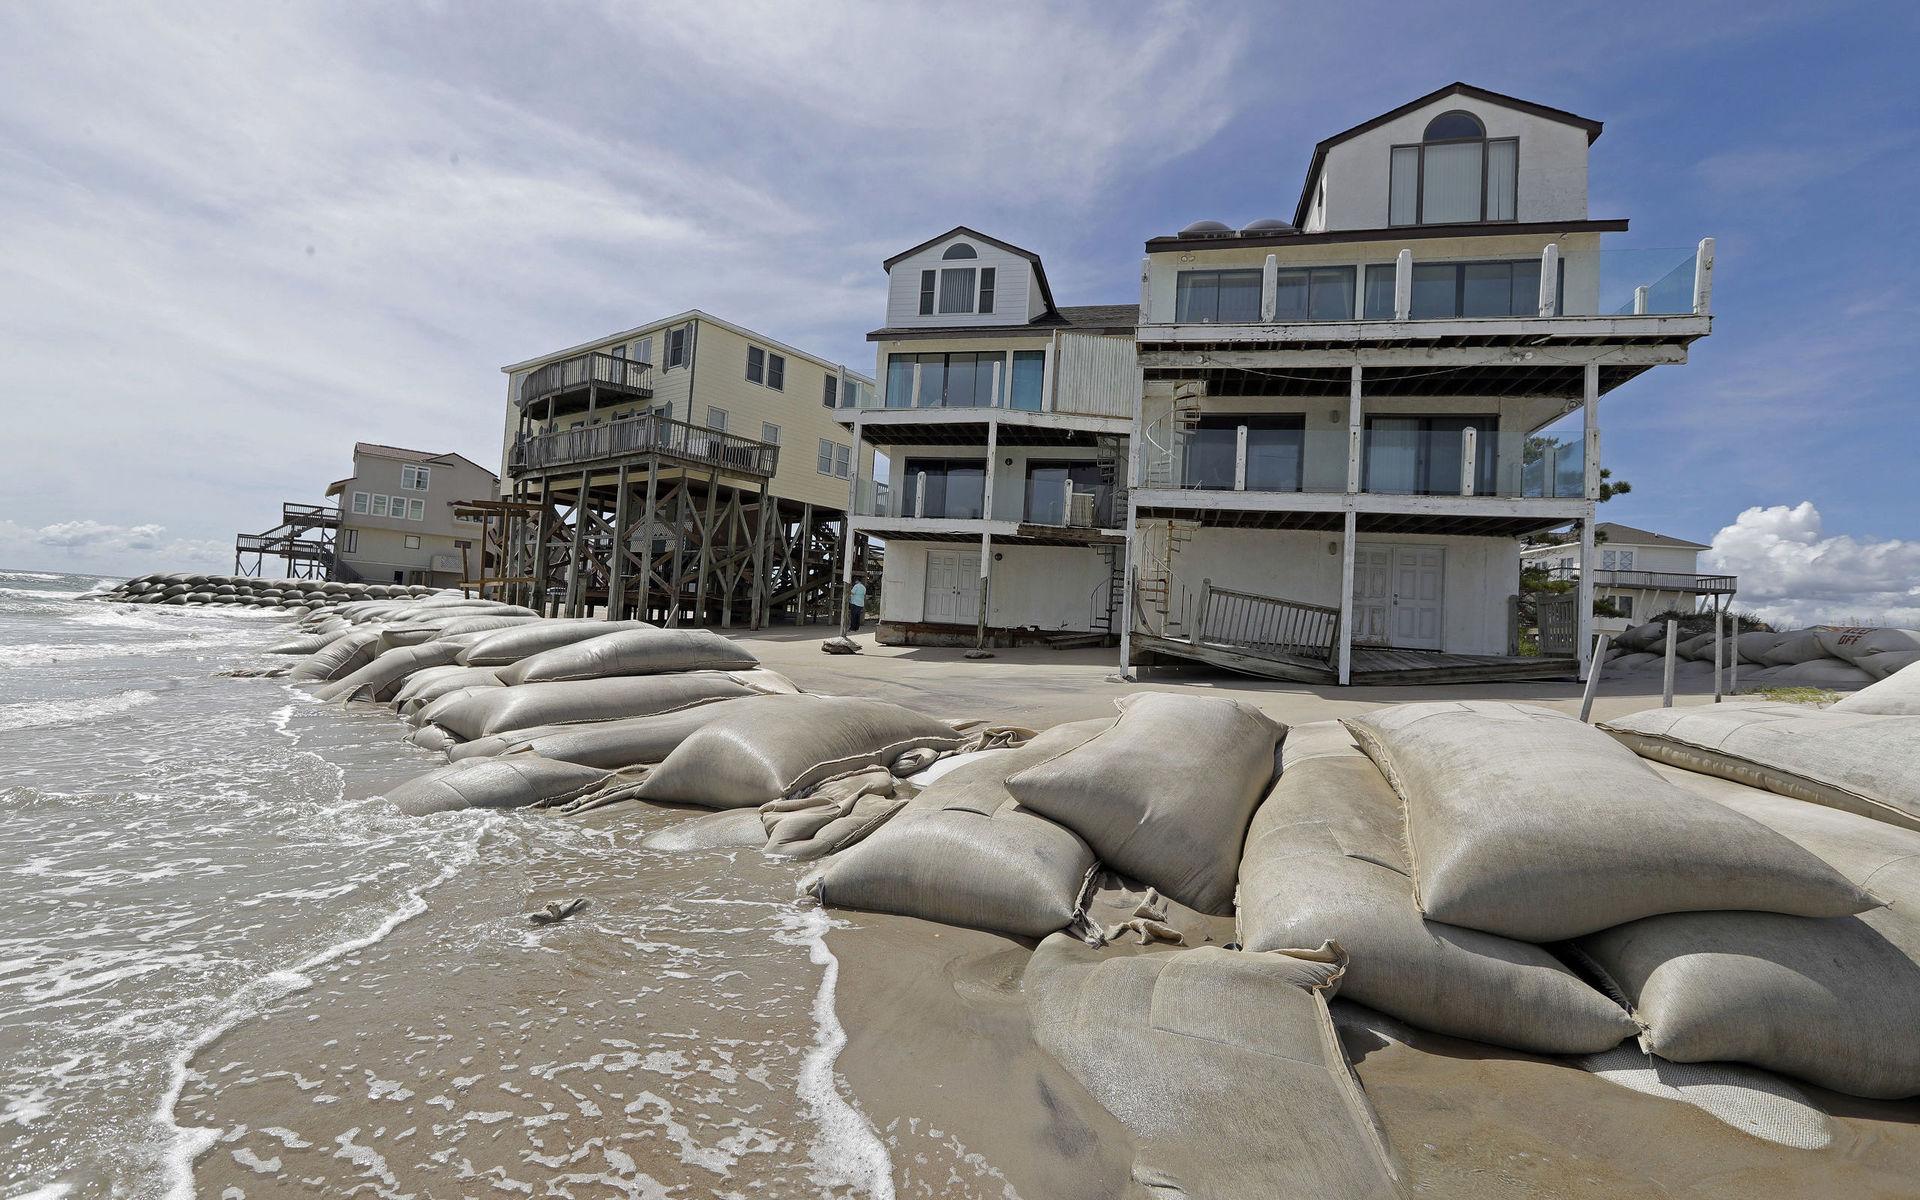 Bostadshus vid stranden i North Topsail Beach, North Carolina har omringats av sandsäckar för att skyddas mot orkanen. 